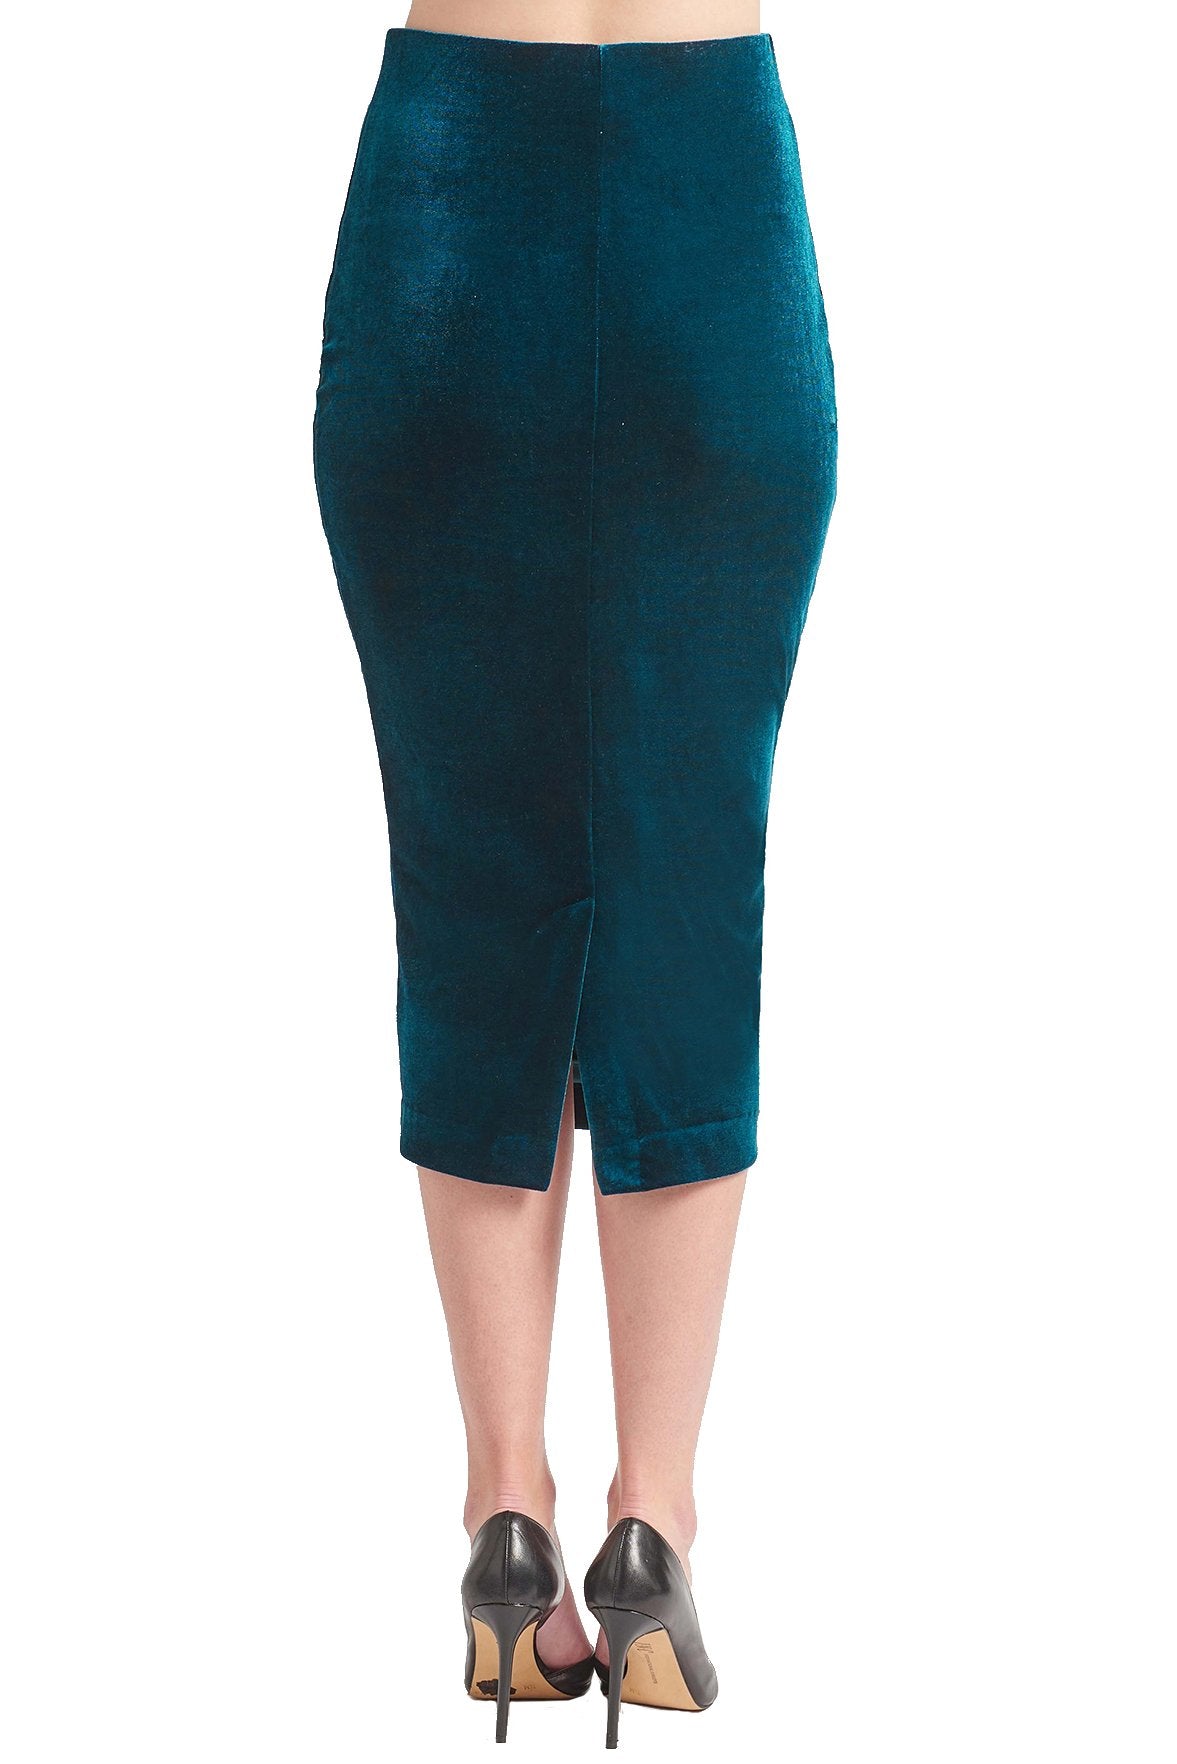 Tia Skirt - Stretch velvet pencil skirt (teal)